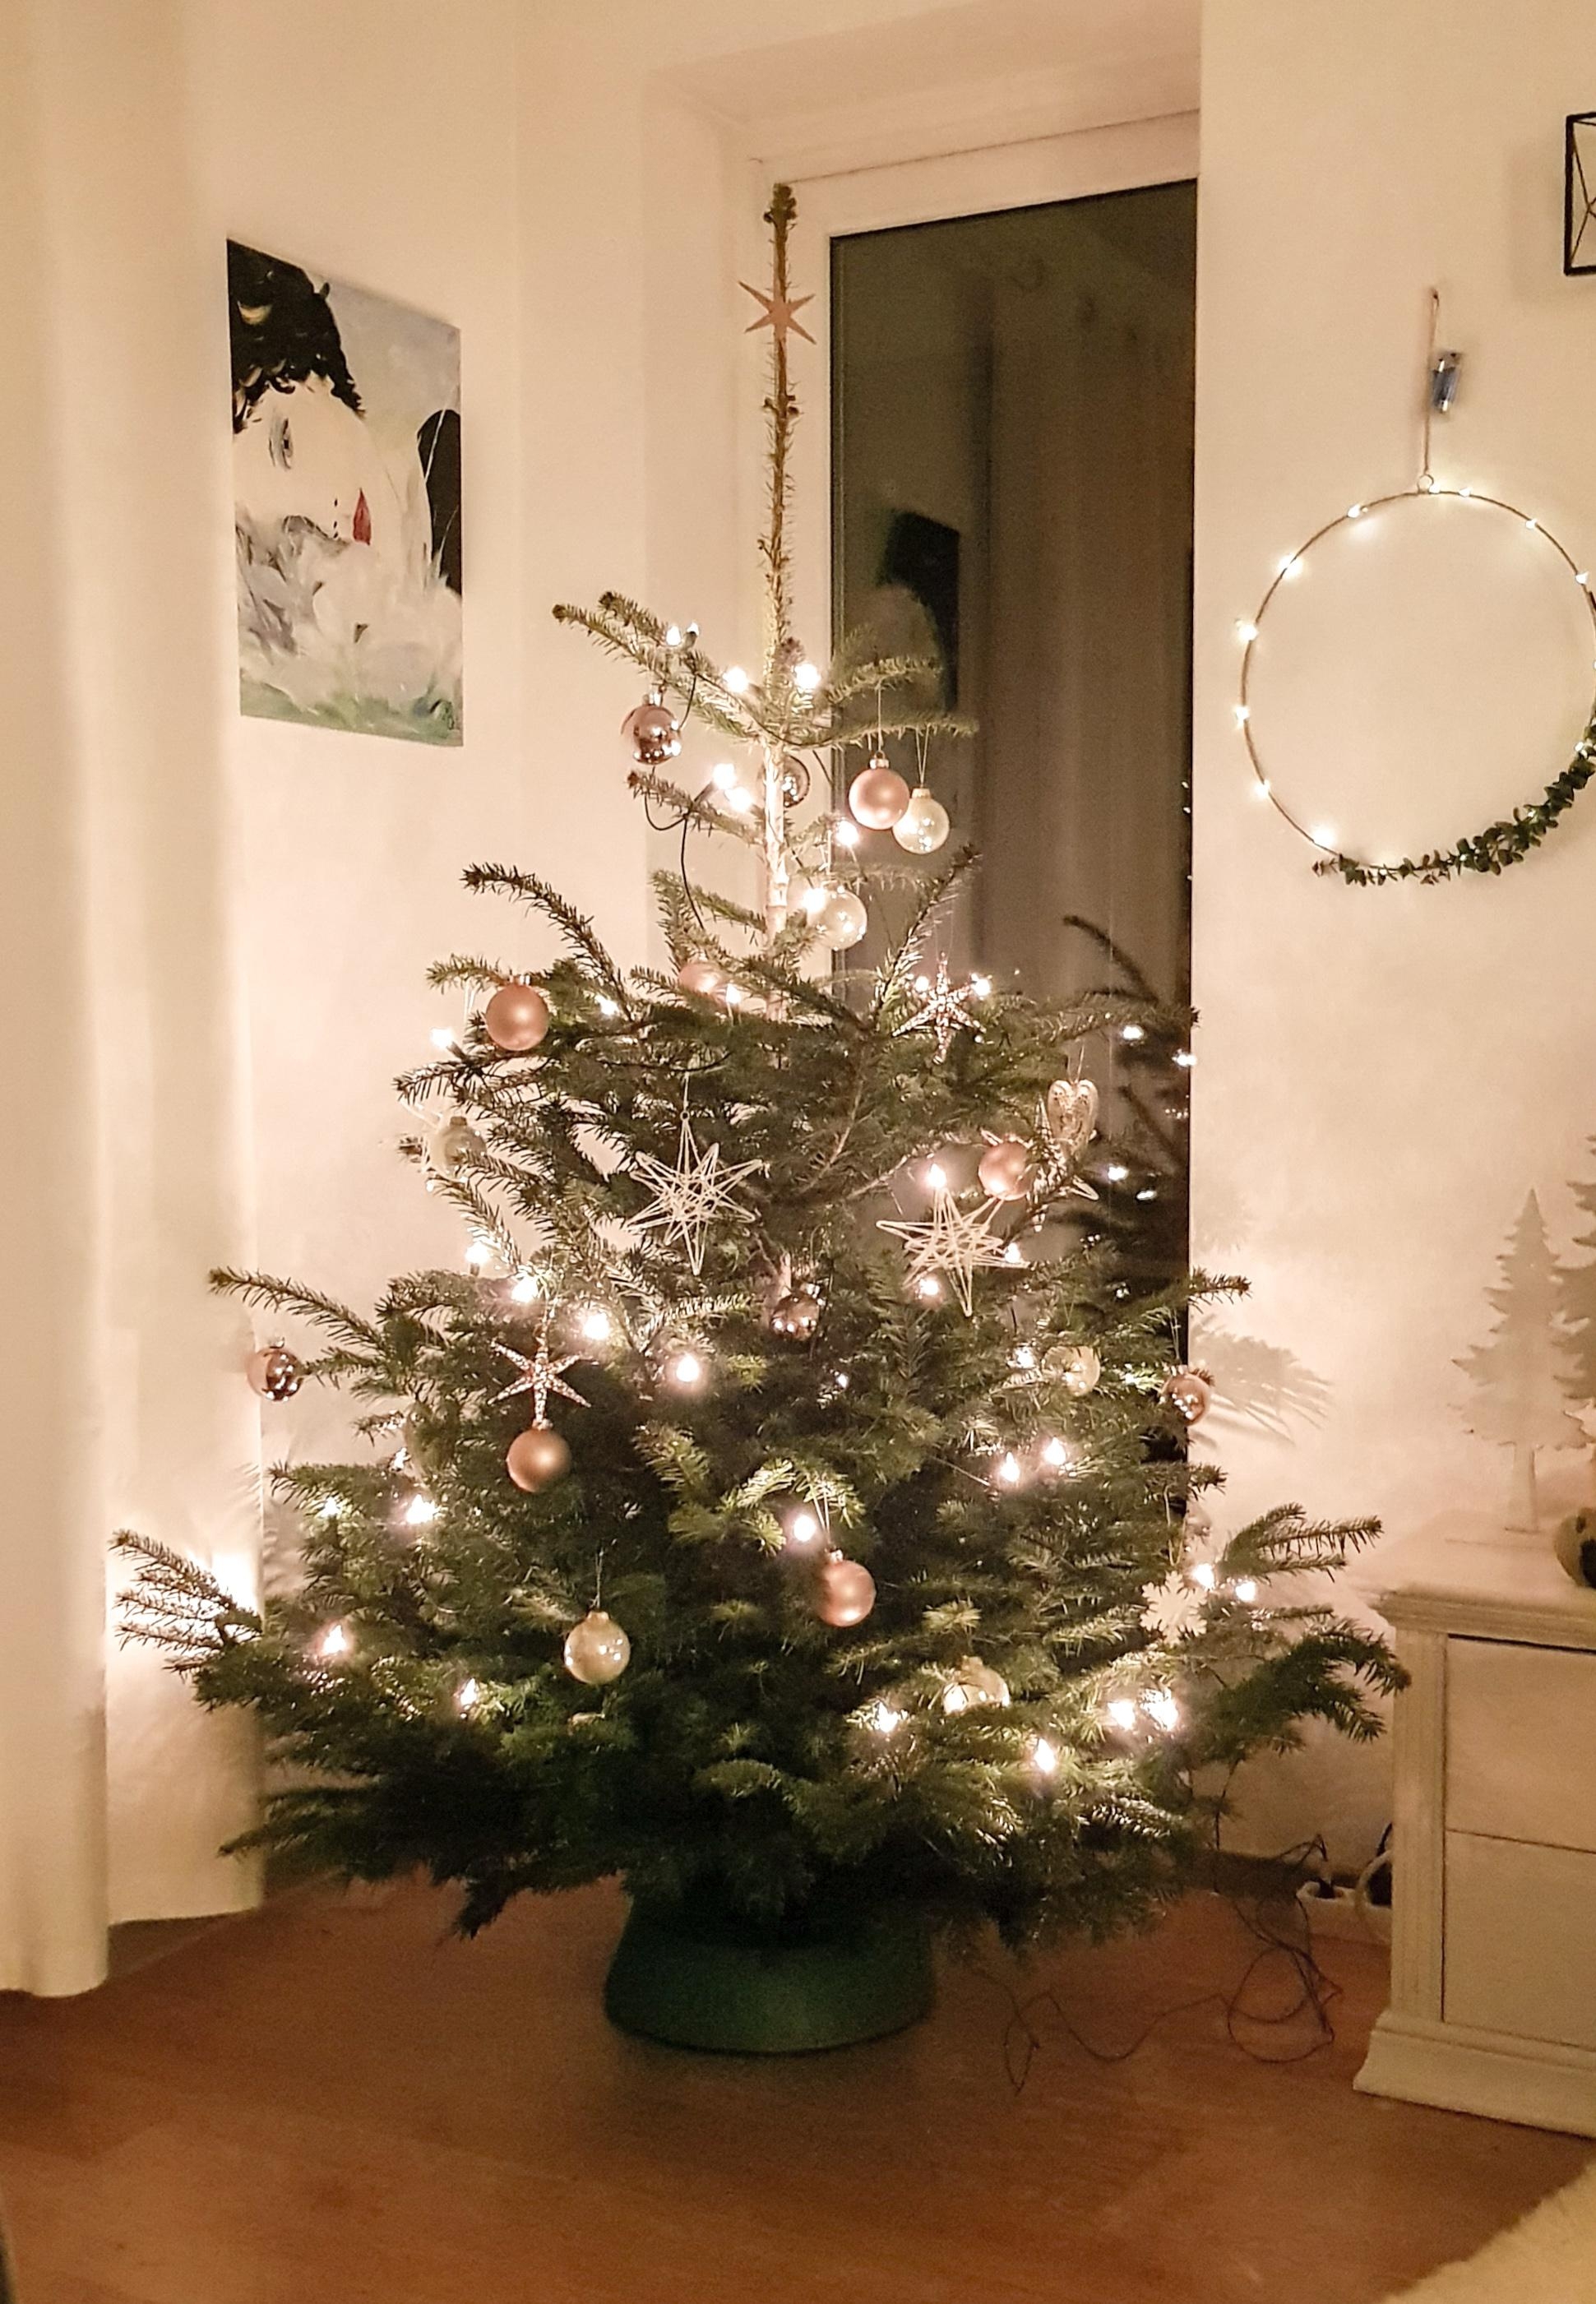 Ein wunderschönes Weihnachtsfest wünsche ich euch 🎄
#christmastime #christmas #christmastree #weihnachtsbaum
